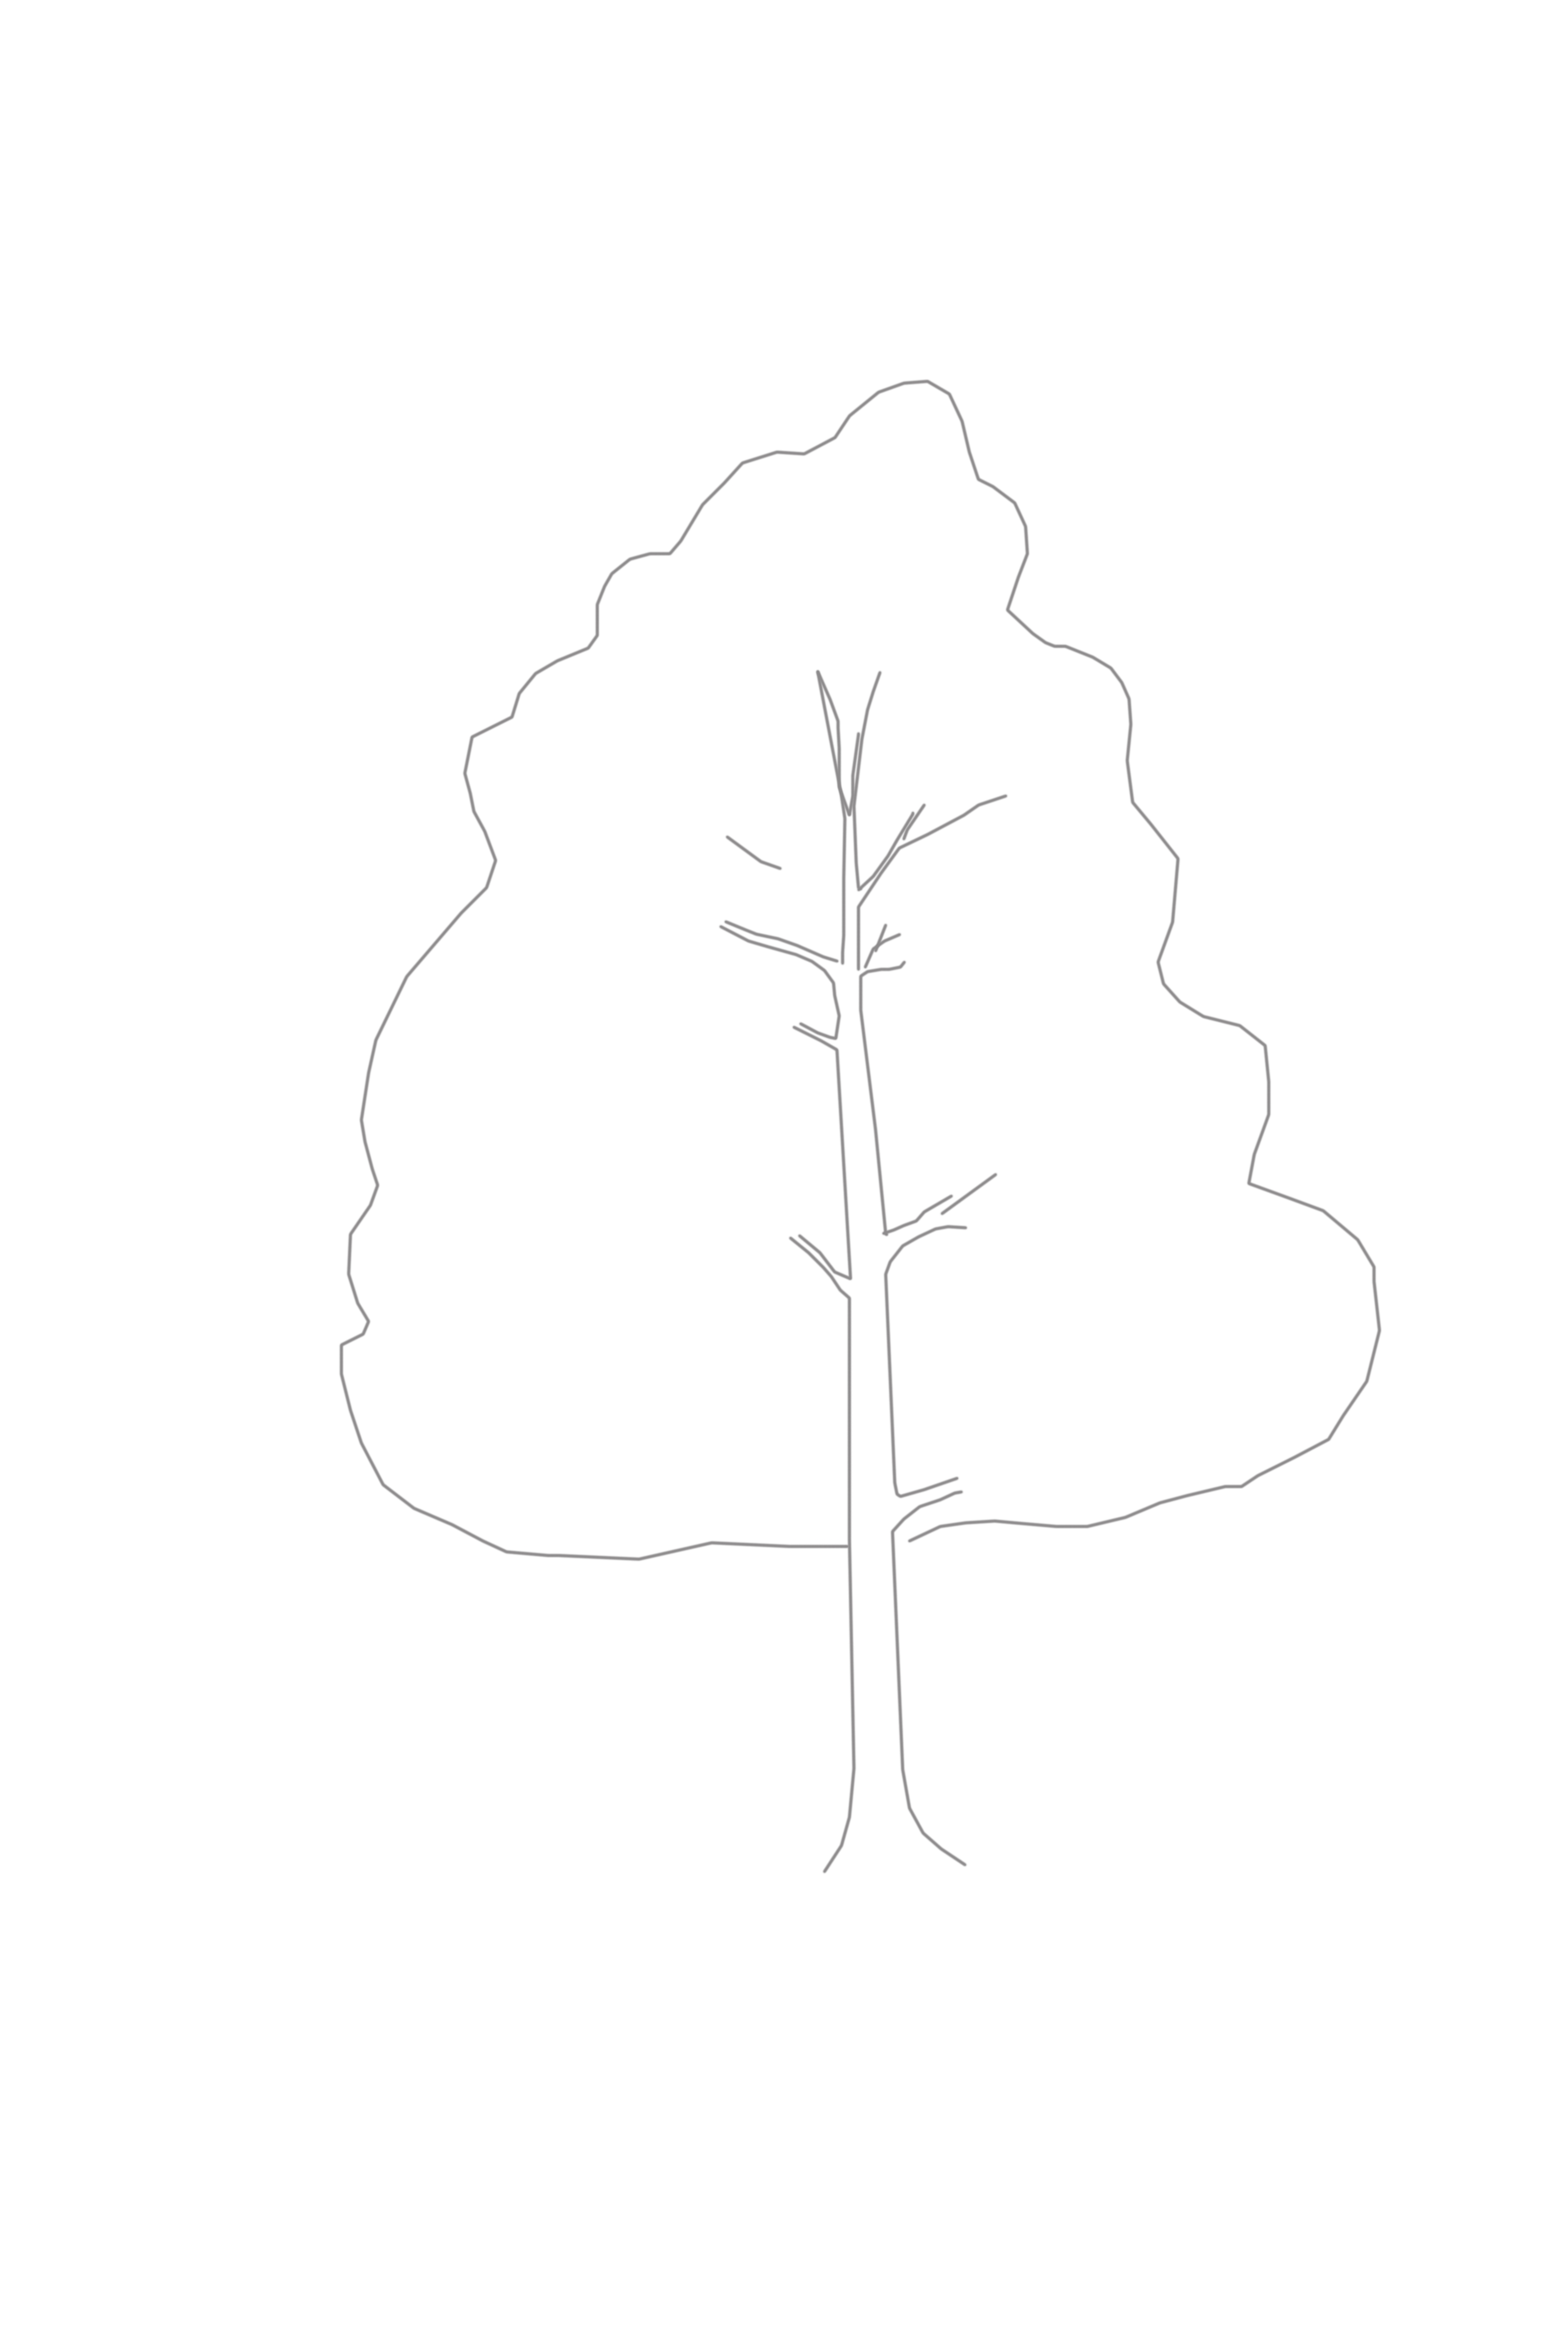 Как нарисовать дерево: как легко и красиво создать рисунок дерева, кустов и растений